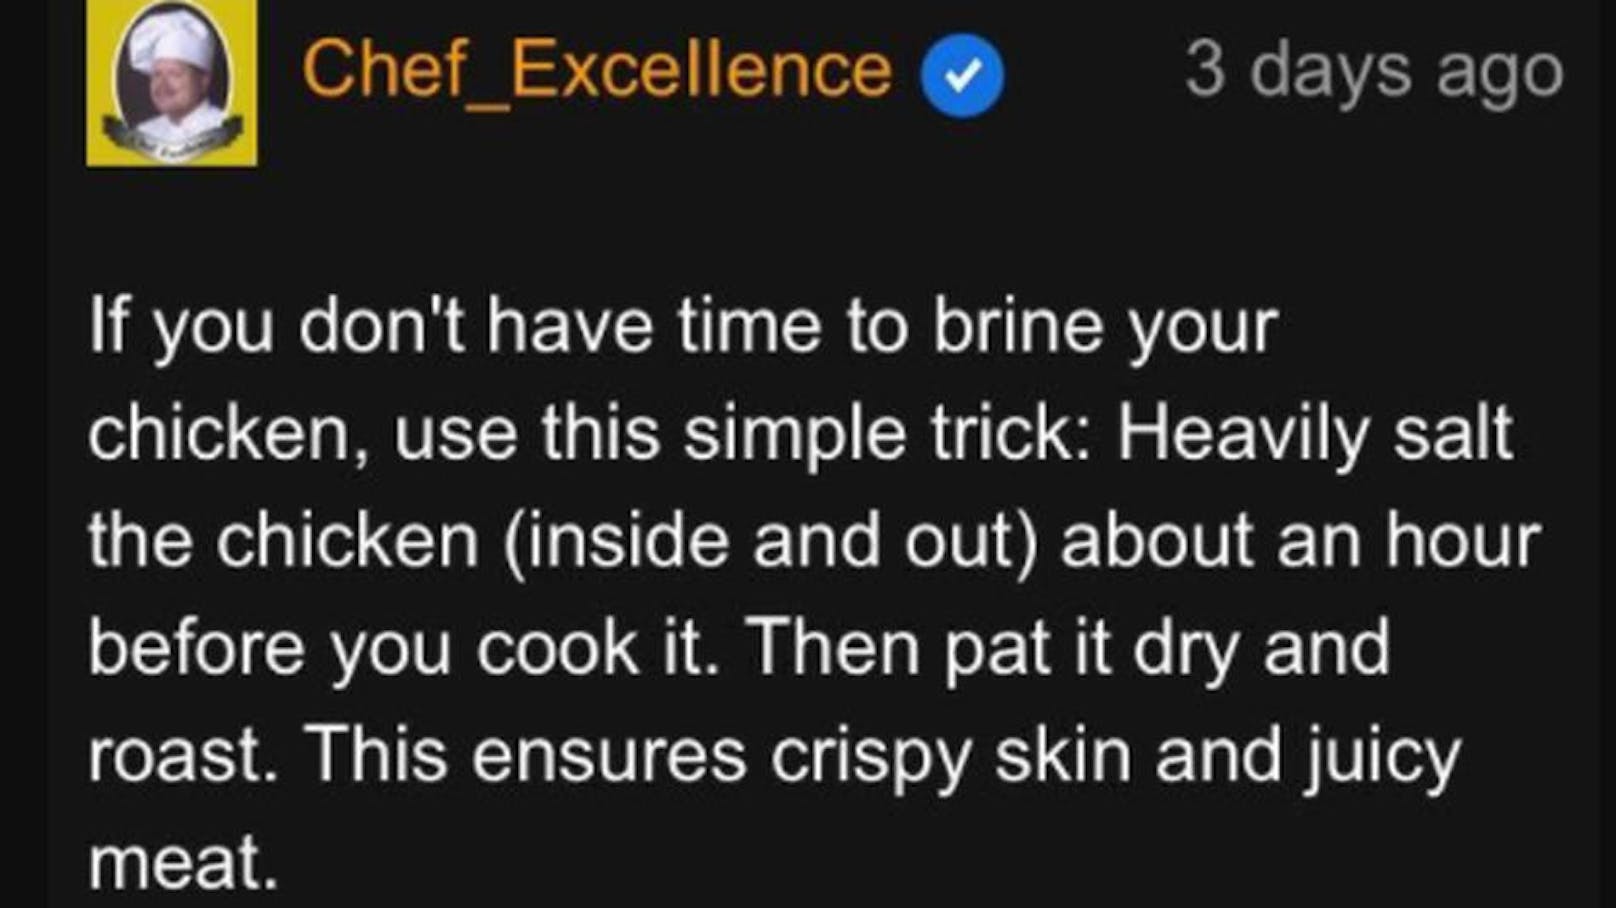 Auch in Sachen Huhn aus dem Ofen kommen Nutzer auf ihre Kosten: "Wenn Sie keine Zeit haben, ihr Huhn zu salzen, verwenden Sie diesen einfachen Trick: Salzen Sie das Huhn (innen und außen), und das ungefähr eine Stunde, bevor Sie es kochen. Tupfen Sie es dann trocken und rösten sie es. Das sorgt für knusprige Haut und saftiges Fleisch."